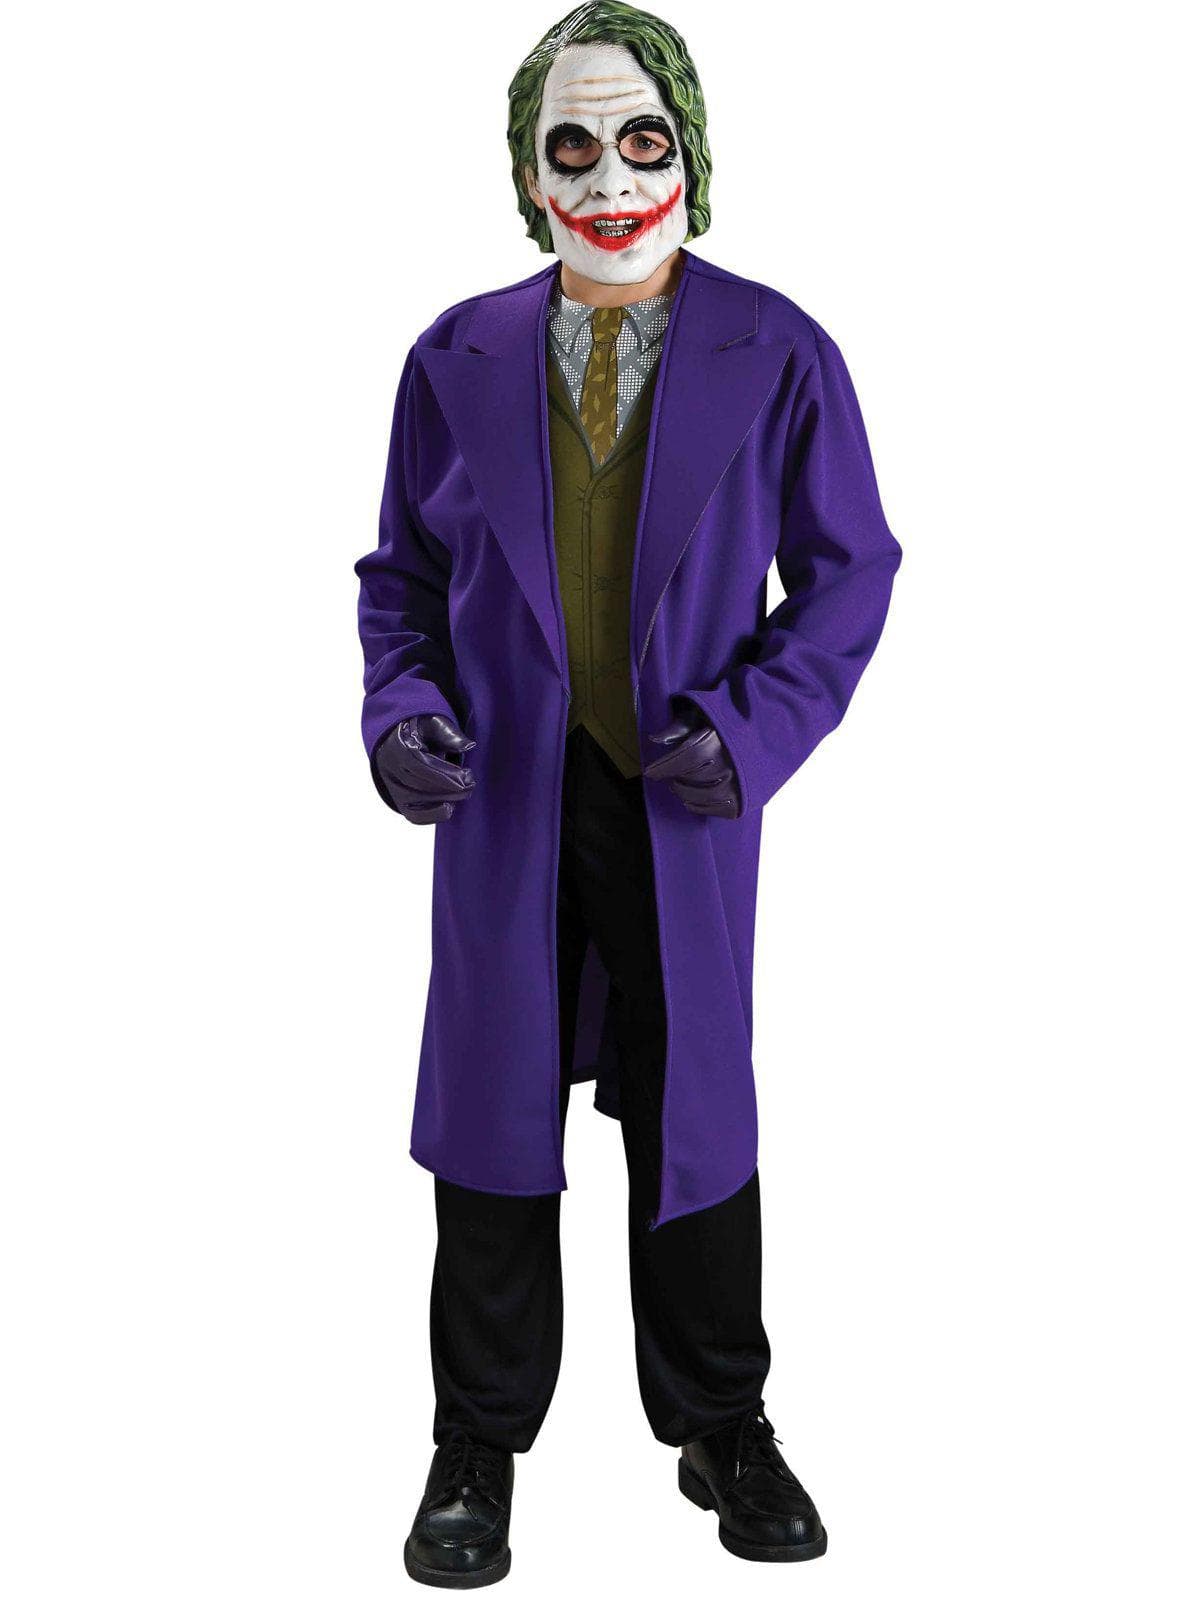 Kid's Dark Knight Joker Costume - costumes.com